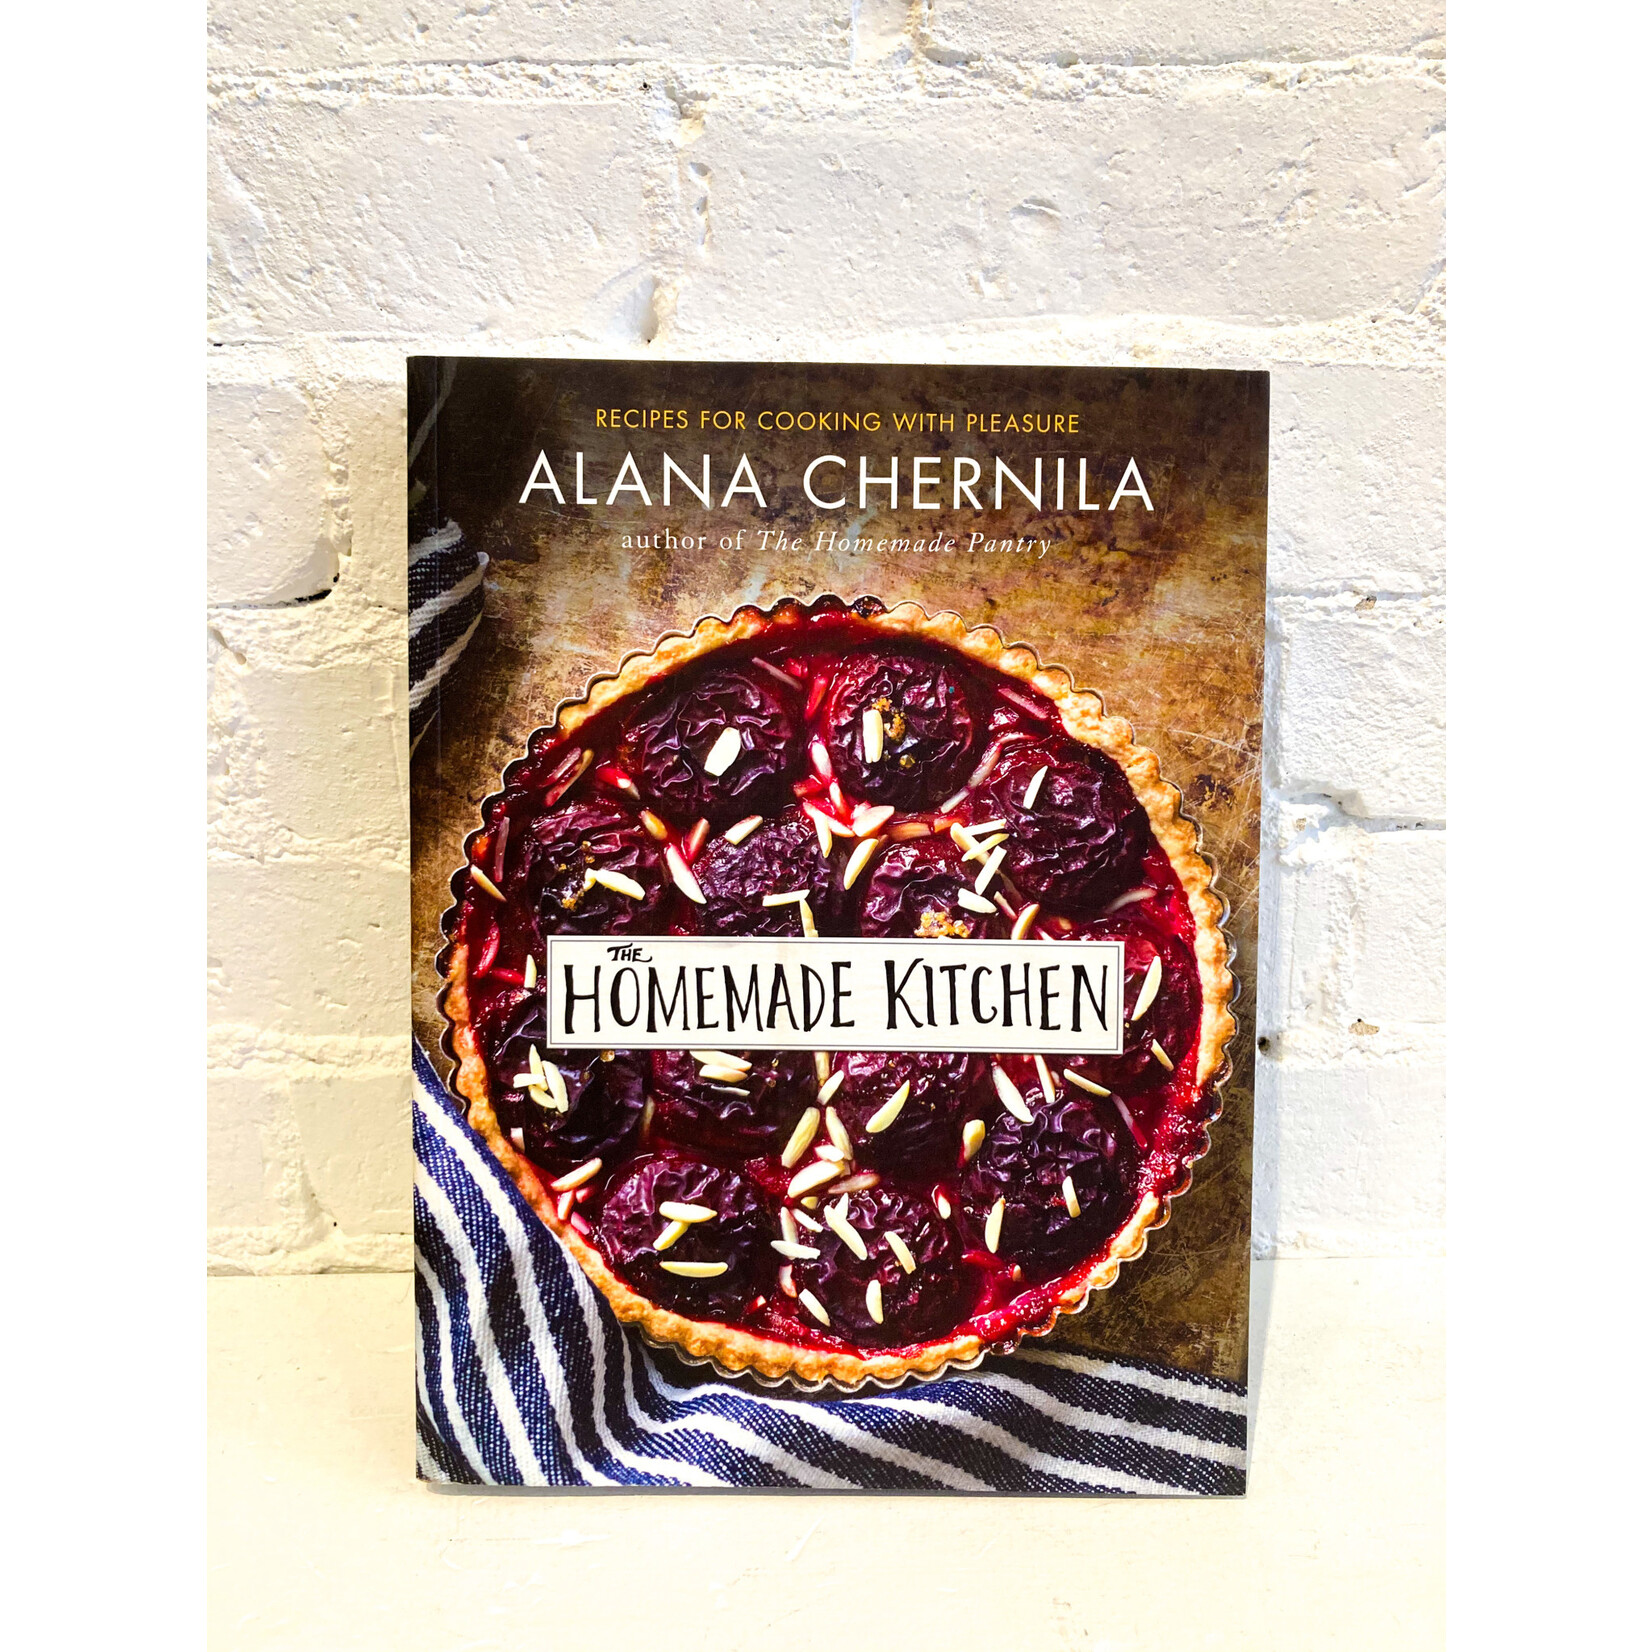 The Homemade Kitchen by Alana Chernila